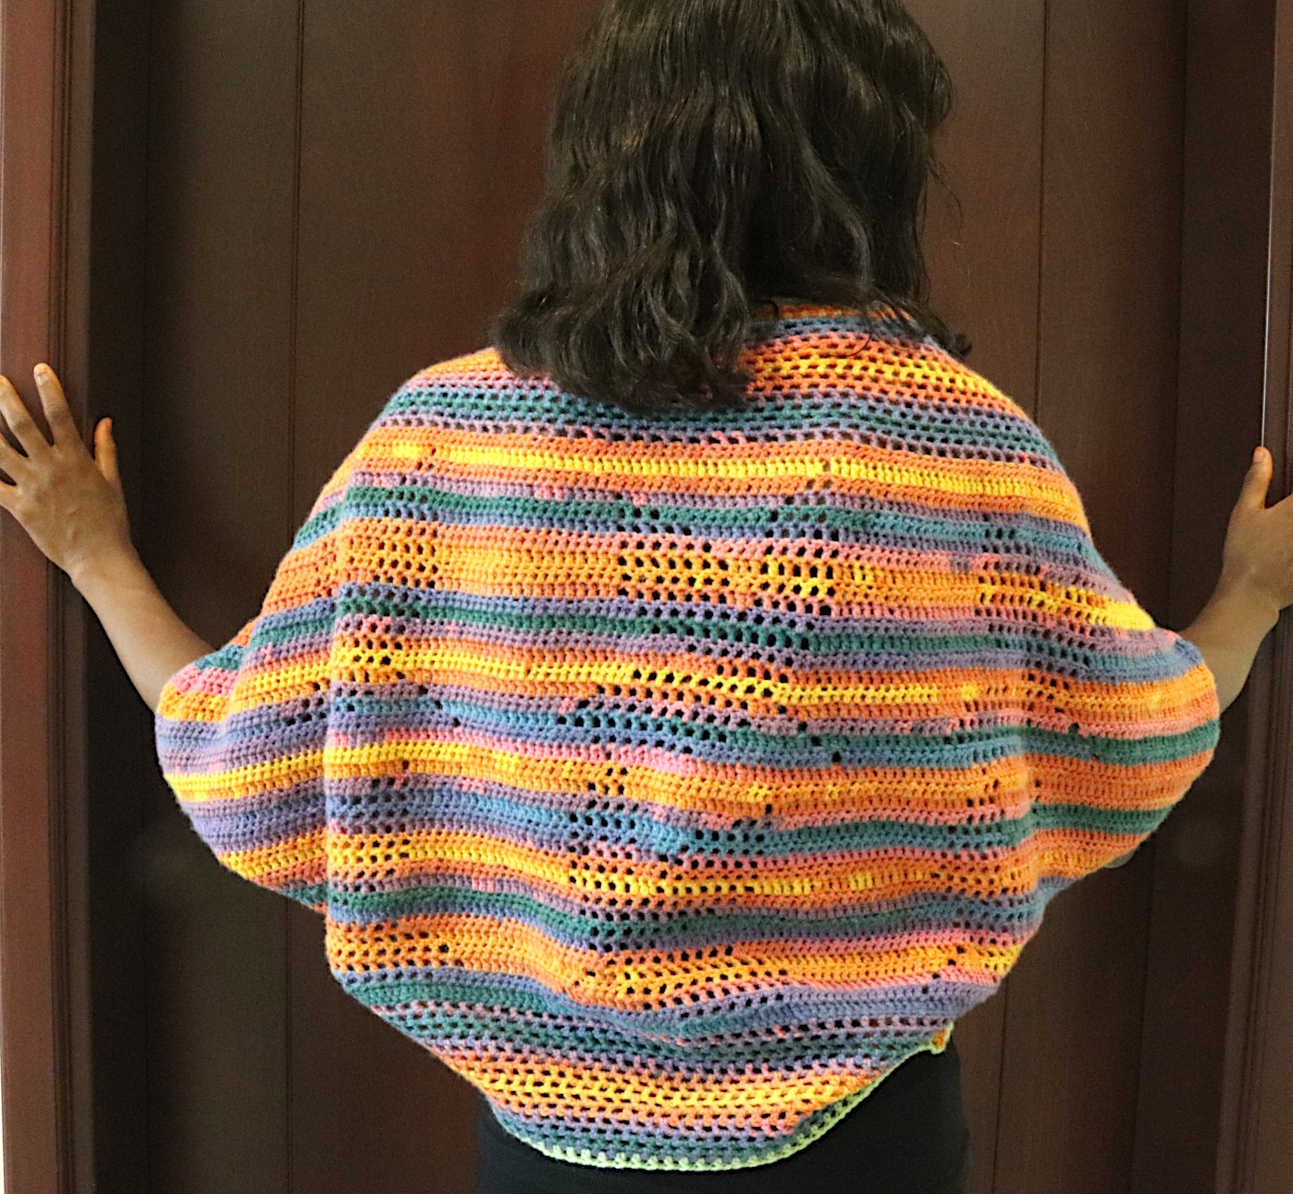 Fall Leaves Crochet Shrug for Women - Free Pattern